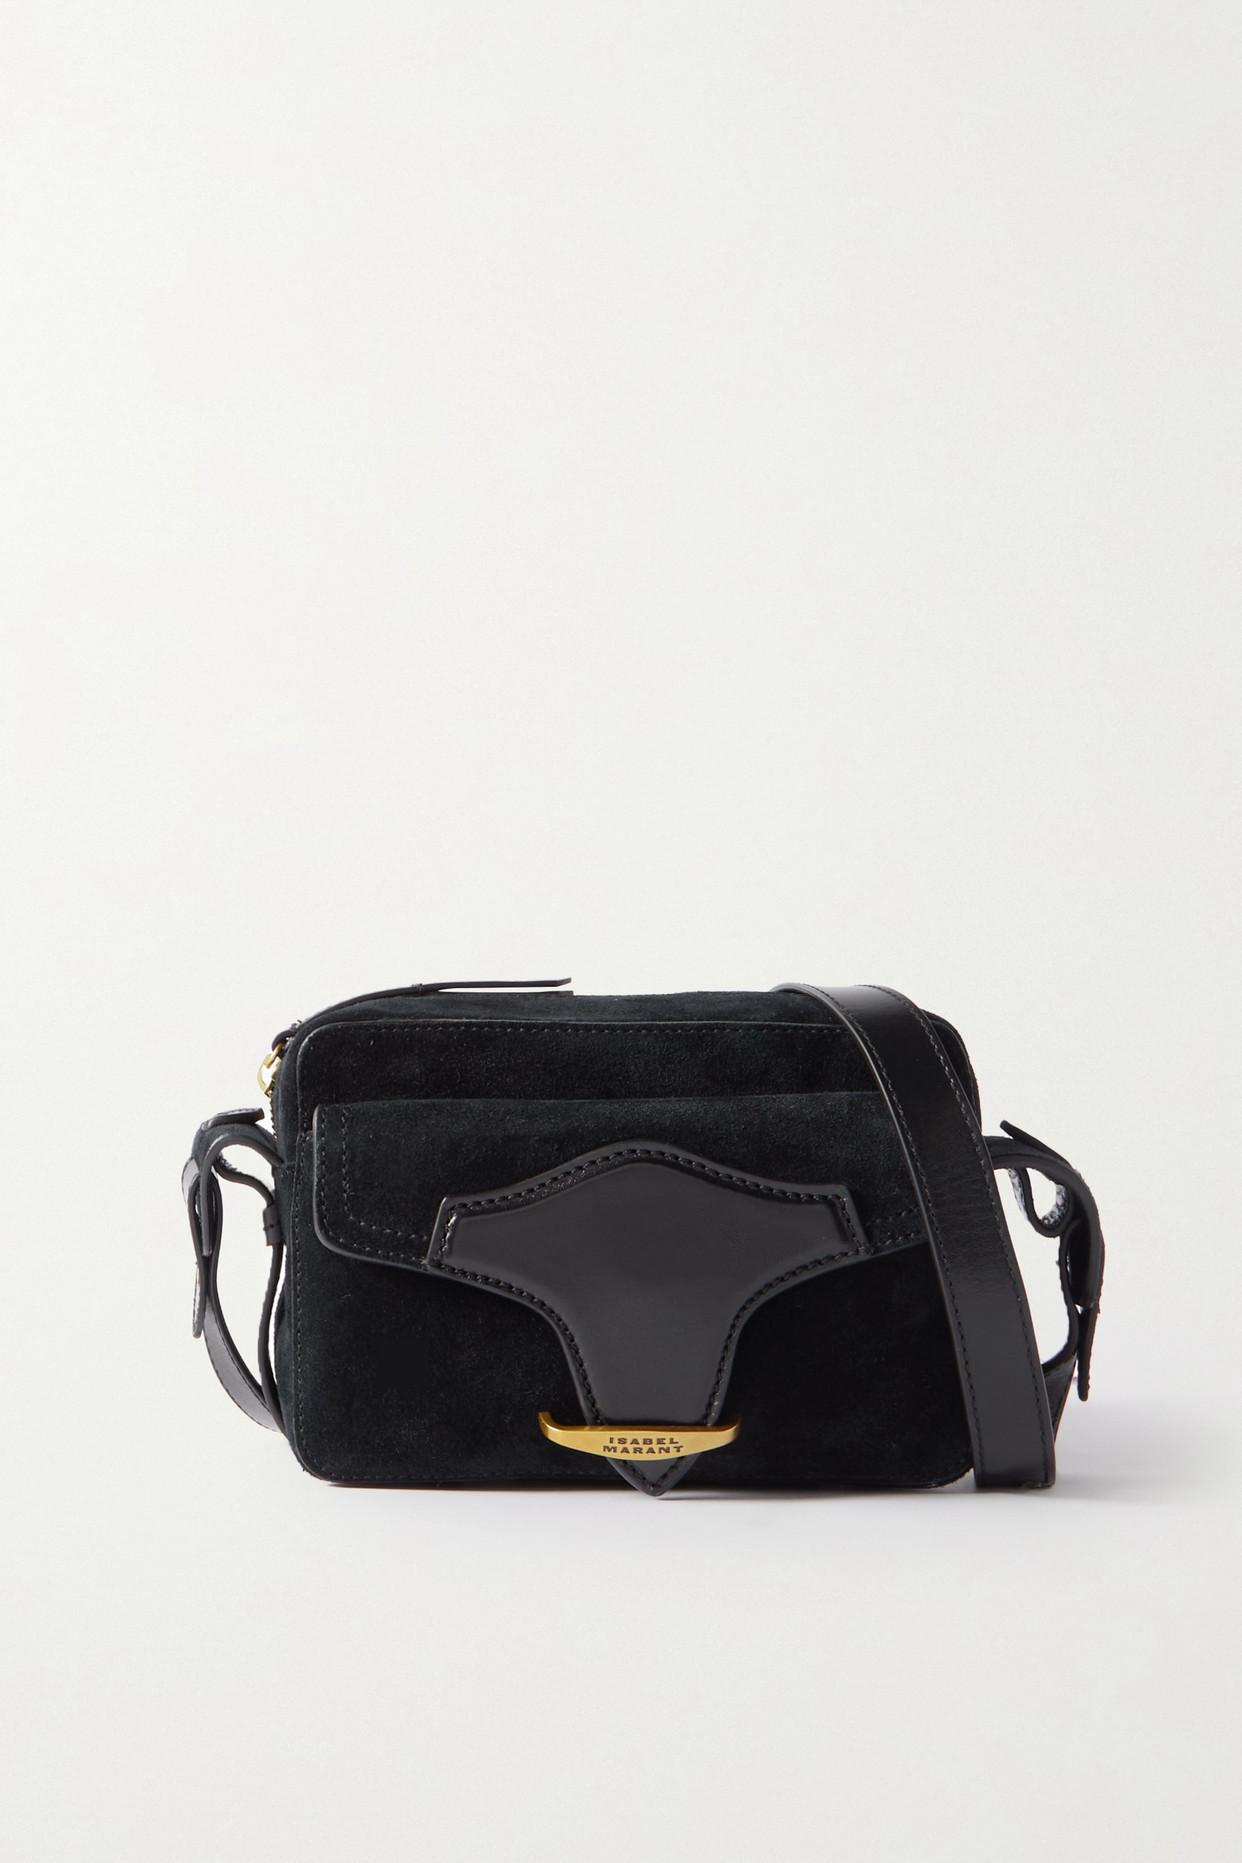 Isabel Marant Wasy Leather-trimmed Suede Shoulder Bag in Black | Lyst